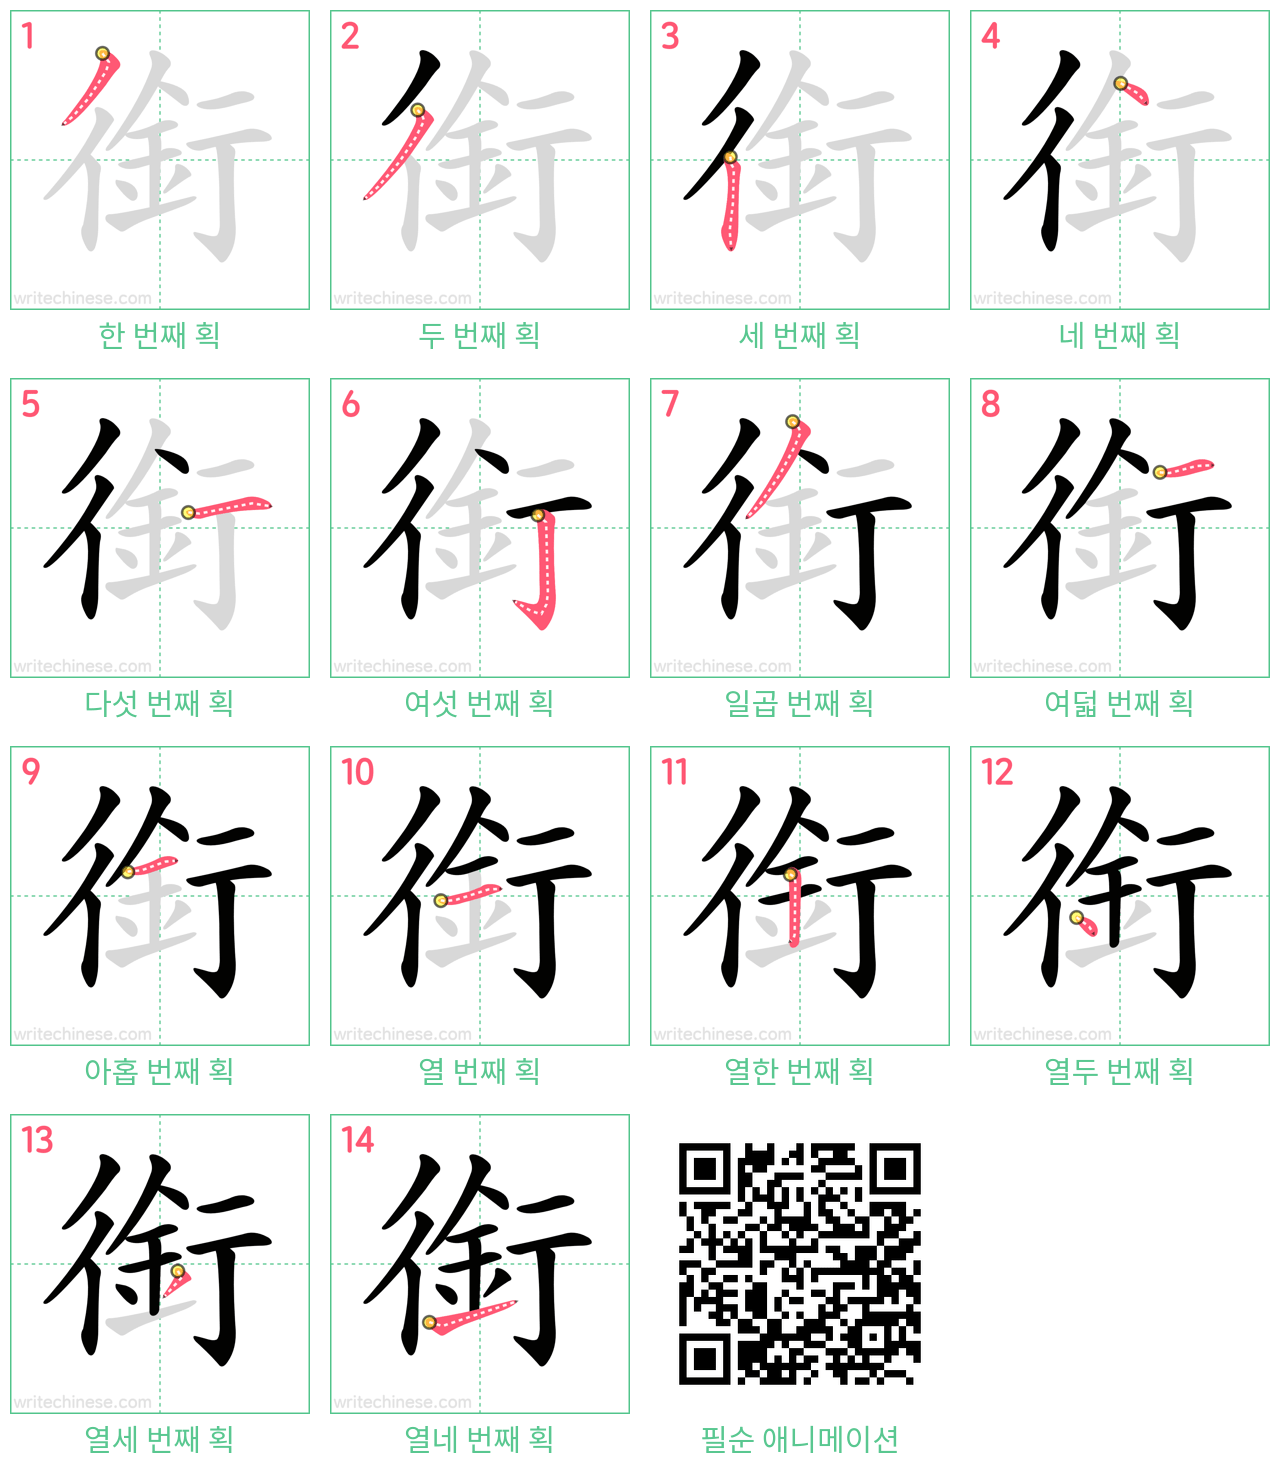 銜 step-by-step stroke order diagrams